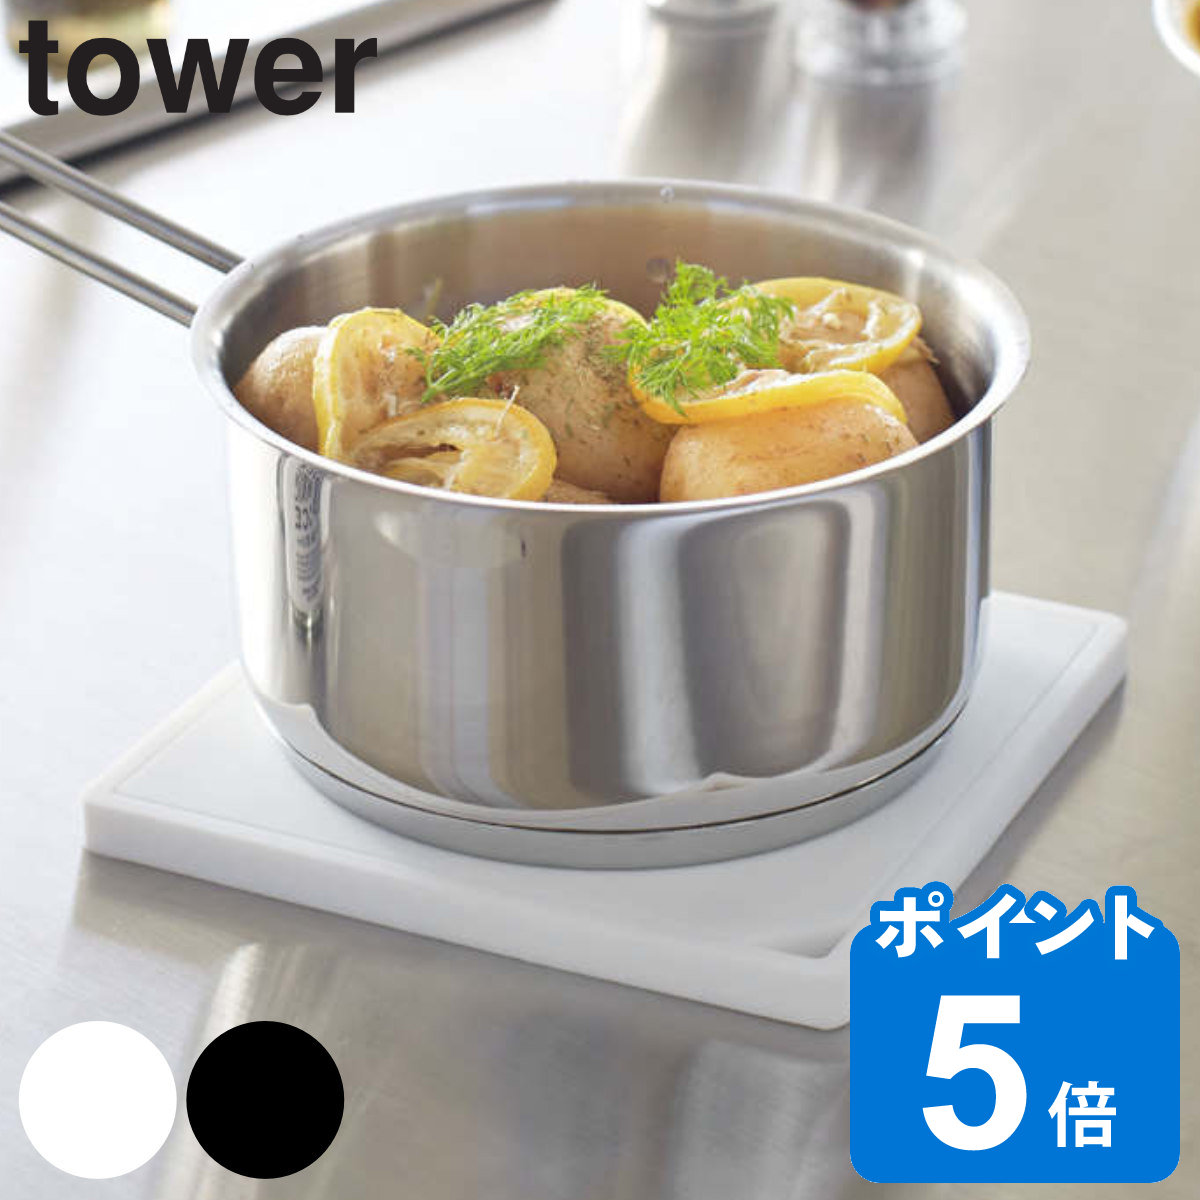 tower シリコン鍋敷き タワー 角型